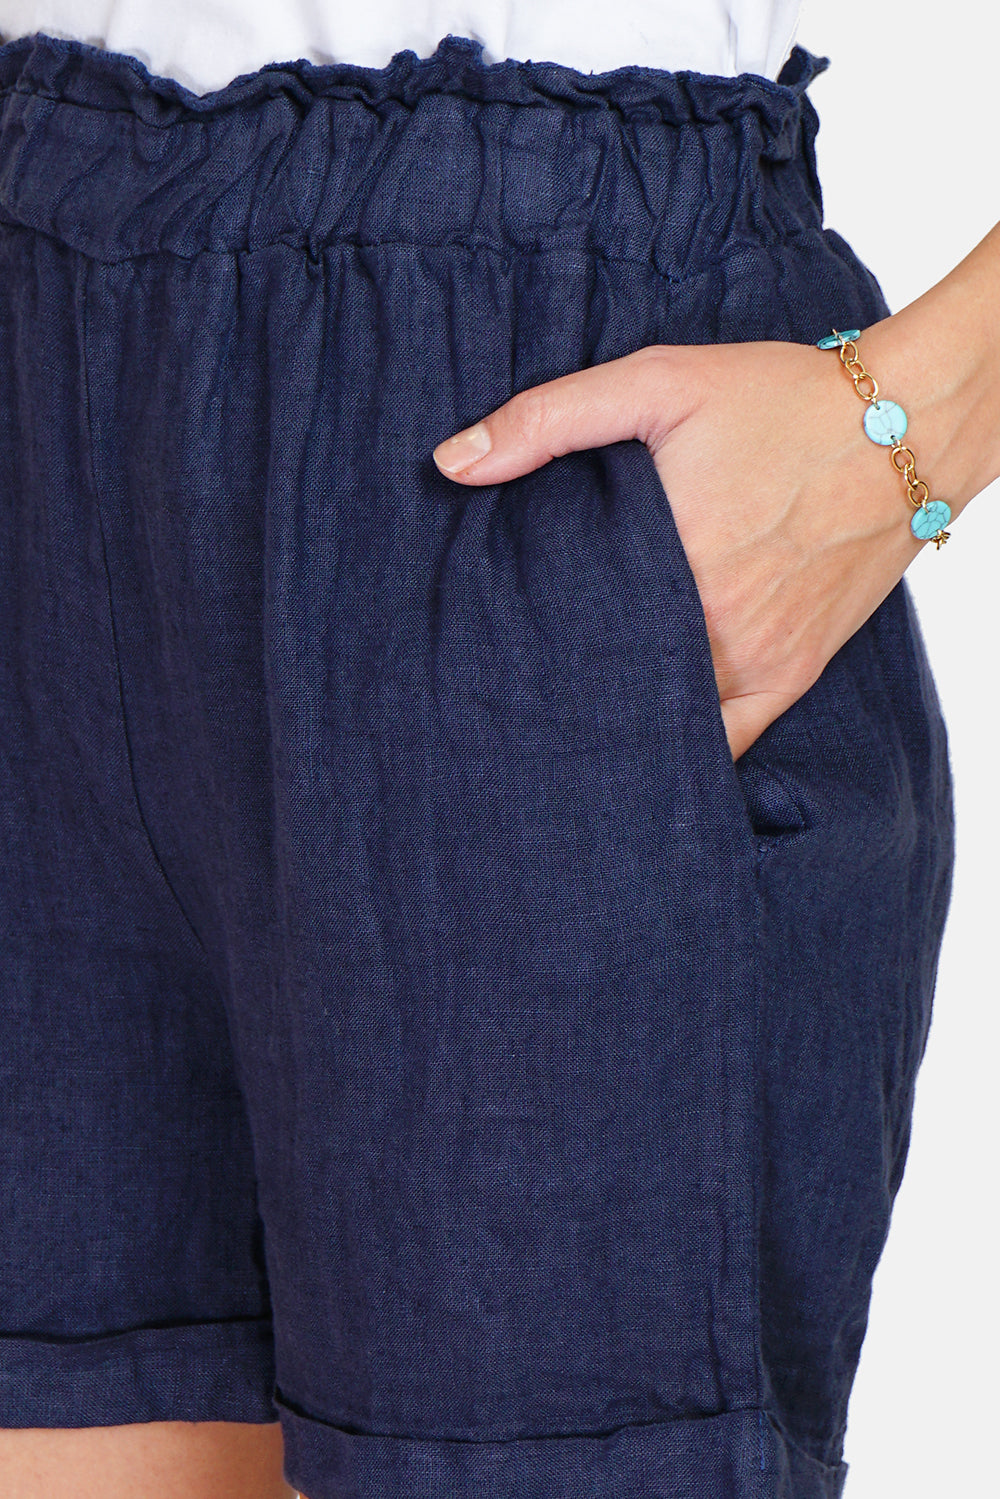 Elastische Shorts mit hohem Bund, unbegrenzten Kanten und Taschen an den Seiten